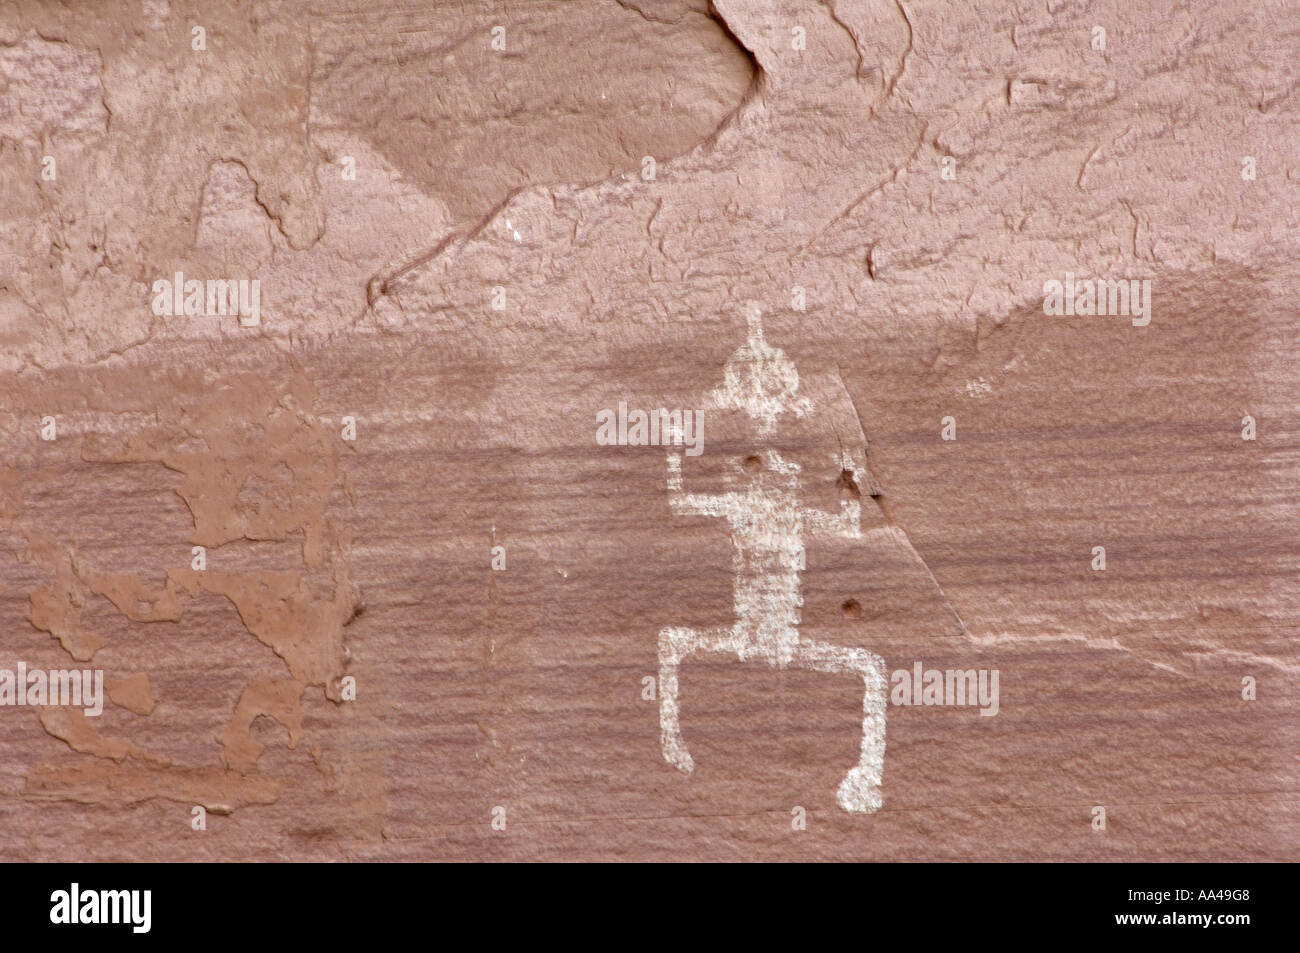 Anasazi aka ancestrale petroglifi dei Pueblo di una figura umana su cliff dwellings del Canyon De Chelly Arizona. Fotografia digitale Foto Stock